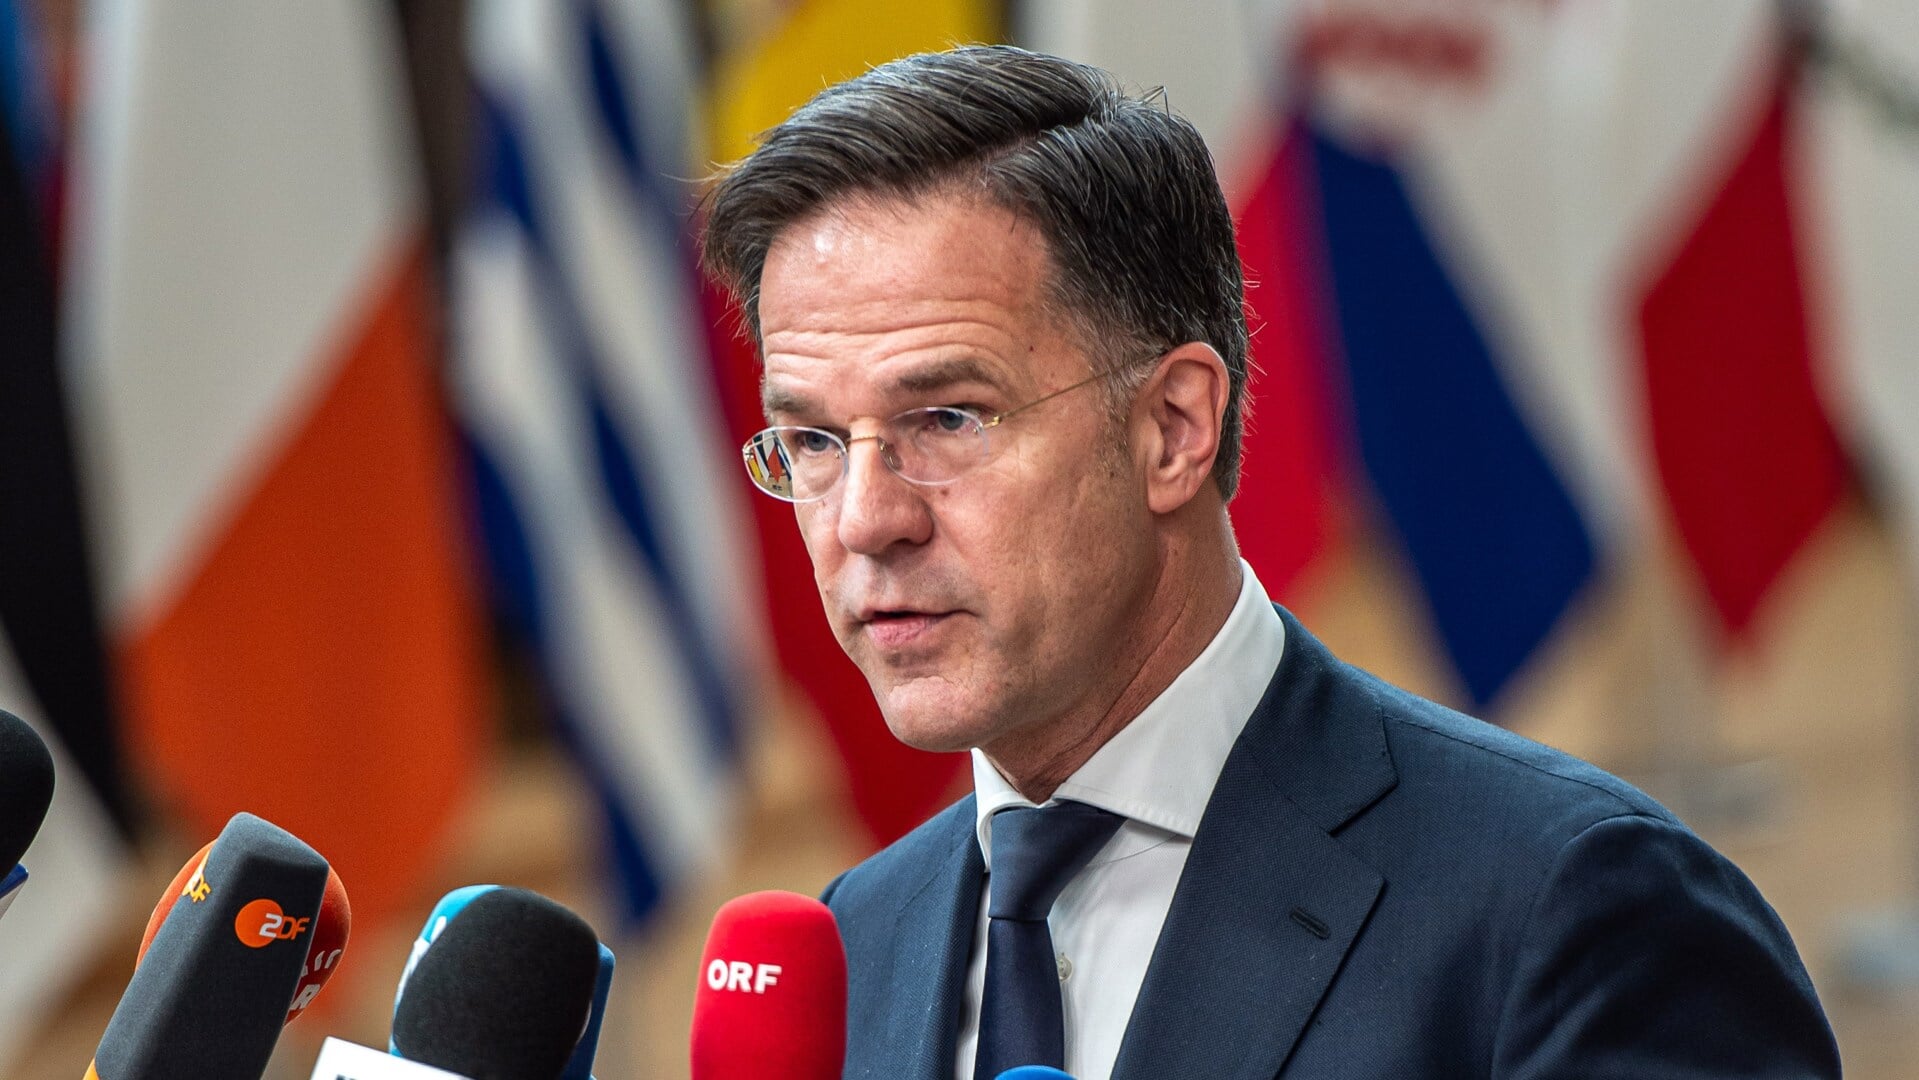 Demissionair premier Mark Rutte komt aan voor een tweedaagse EU-top over buitenlandkwesties als de oorlog in Oekraïne en in Gaza.